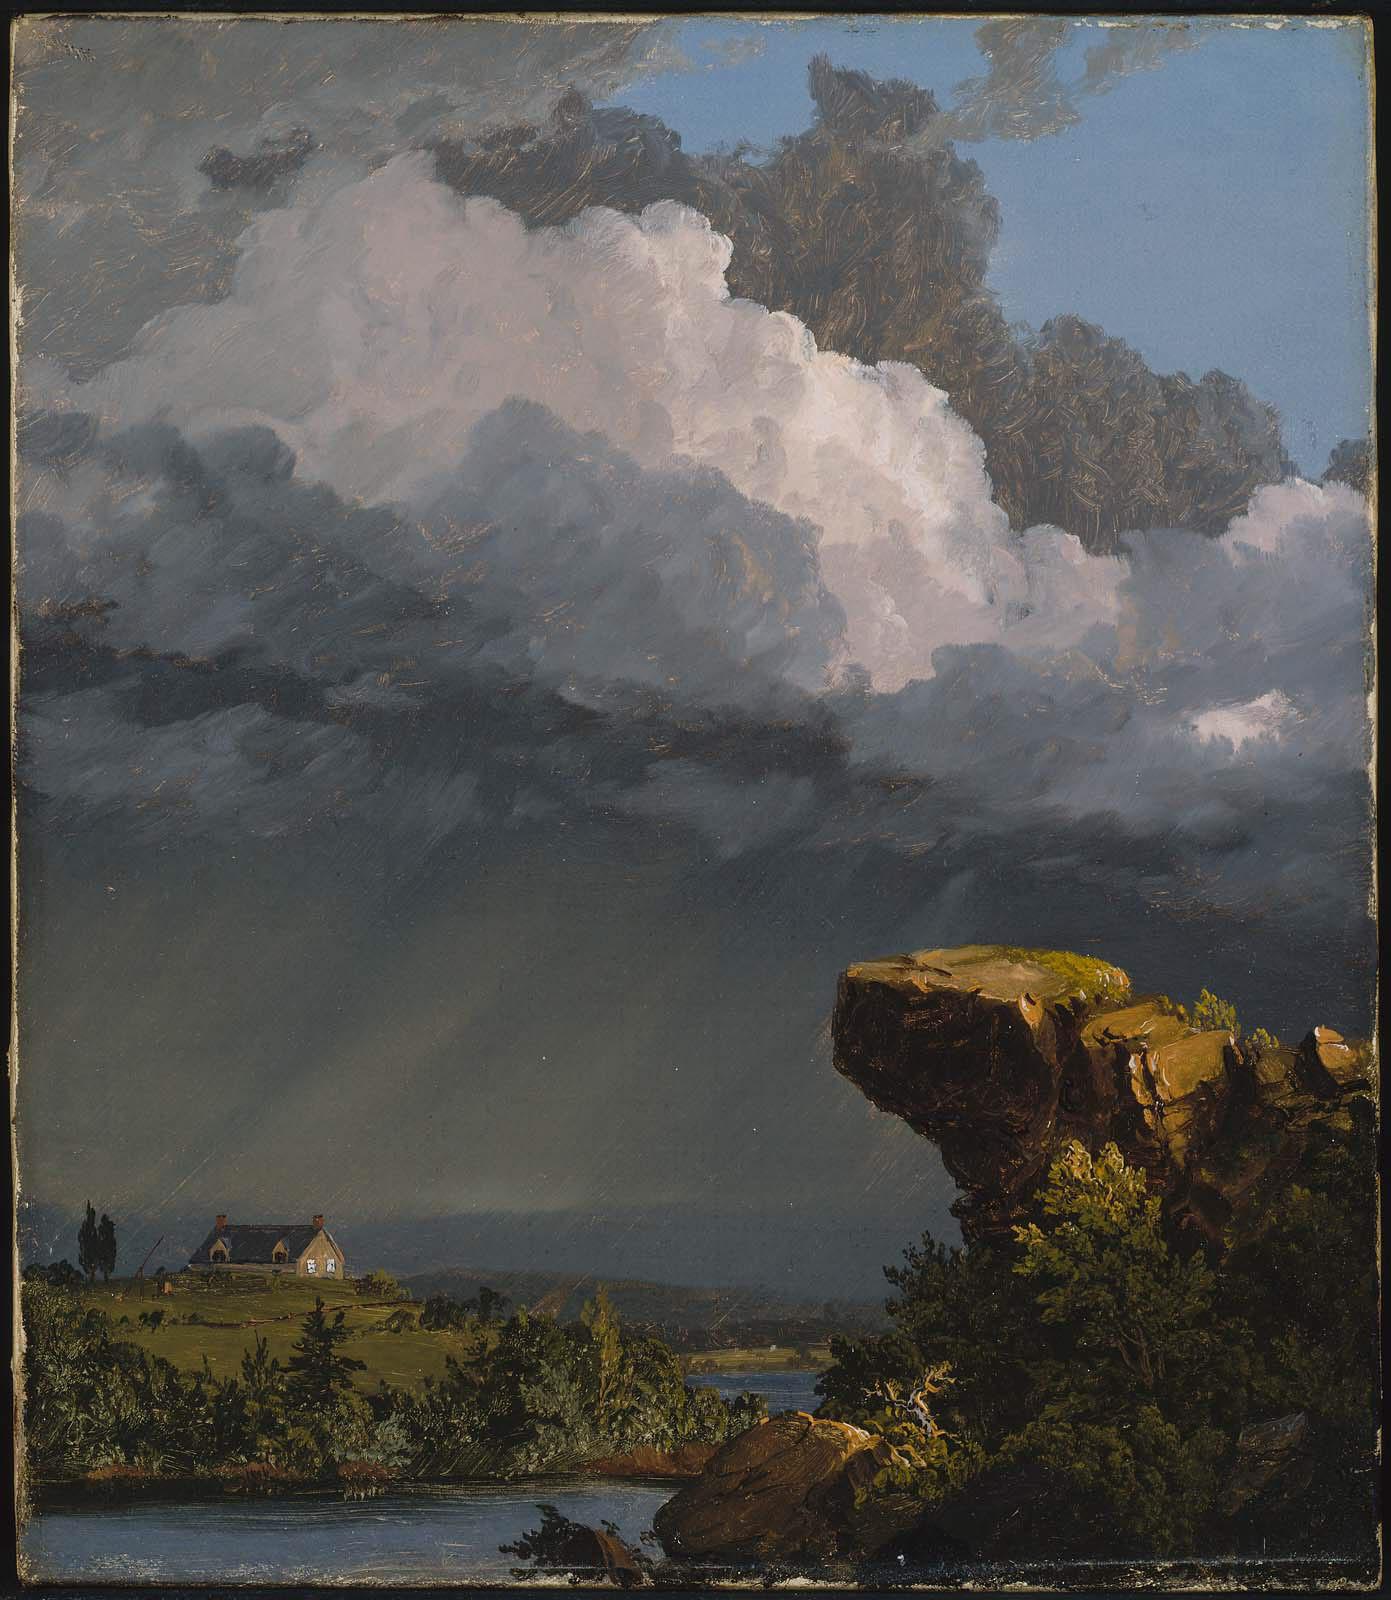 Una tempesta passeggera by Frederic Edwin Church - 1849 - 35,88 x 30,48 cm 